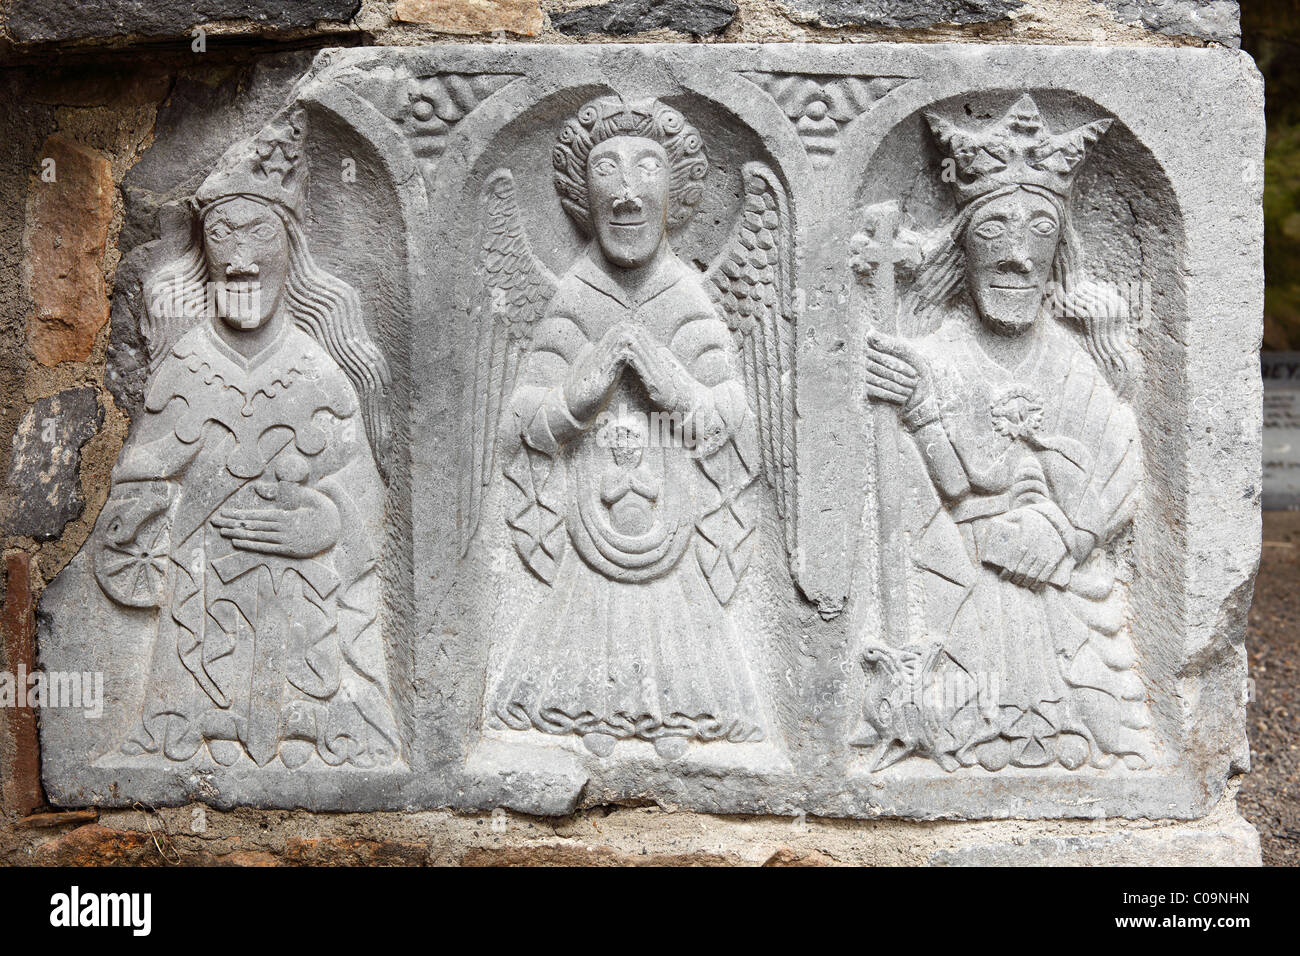 Grupo de figuras denominado Weepers en el transepto norte, Jerpoint Abbey, Condado , República de Irlanda, las Islas Británicas Foto de stock